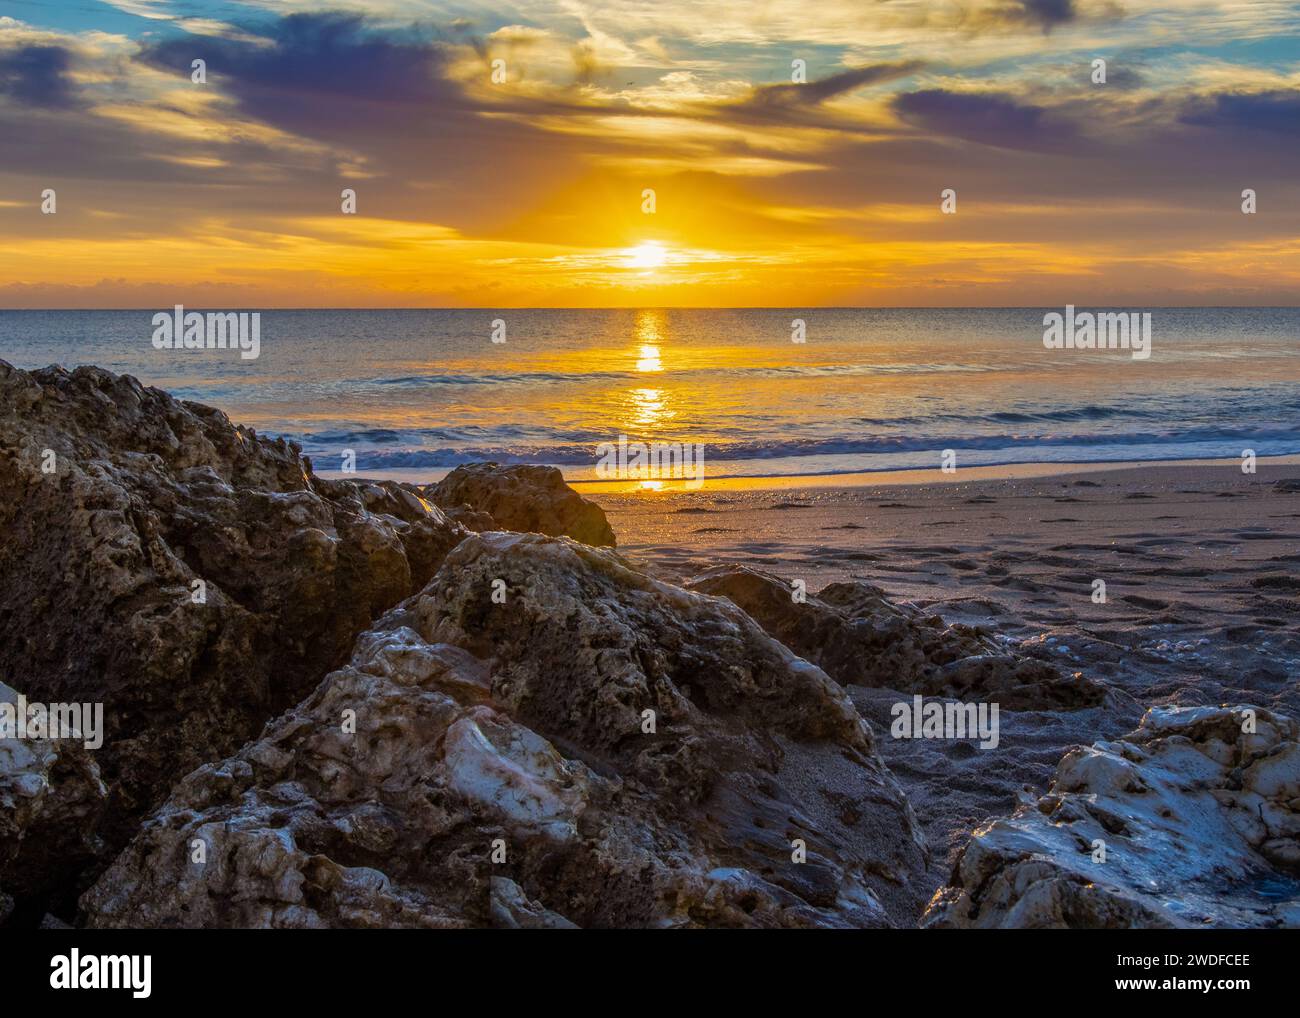 Alba d'oro su una costa frastagliata, perfetta per temi ispiratori, promozioni di viaggio e fotografie di paesaggi naturali. Foto Stock